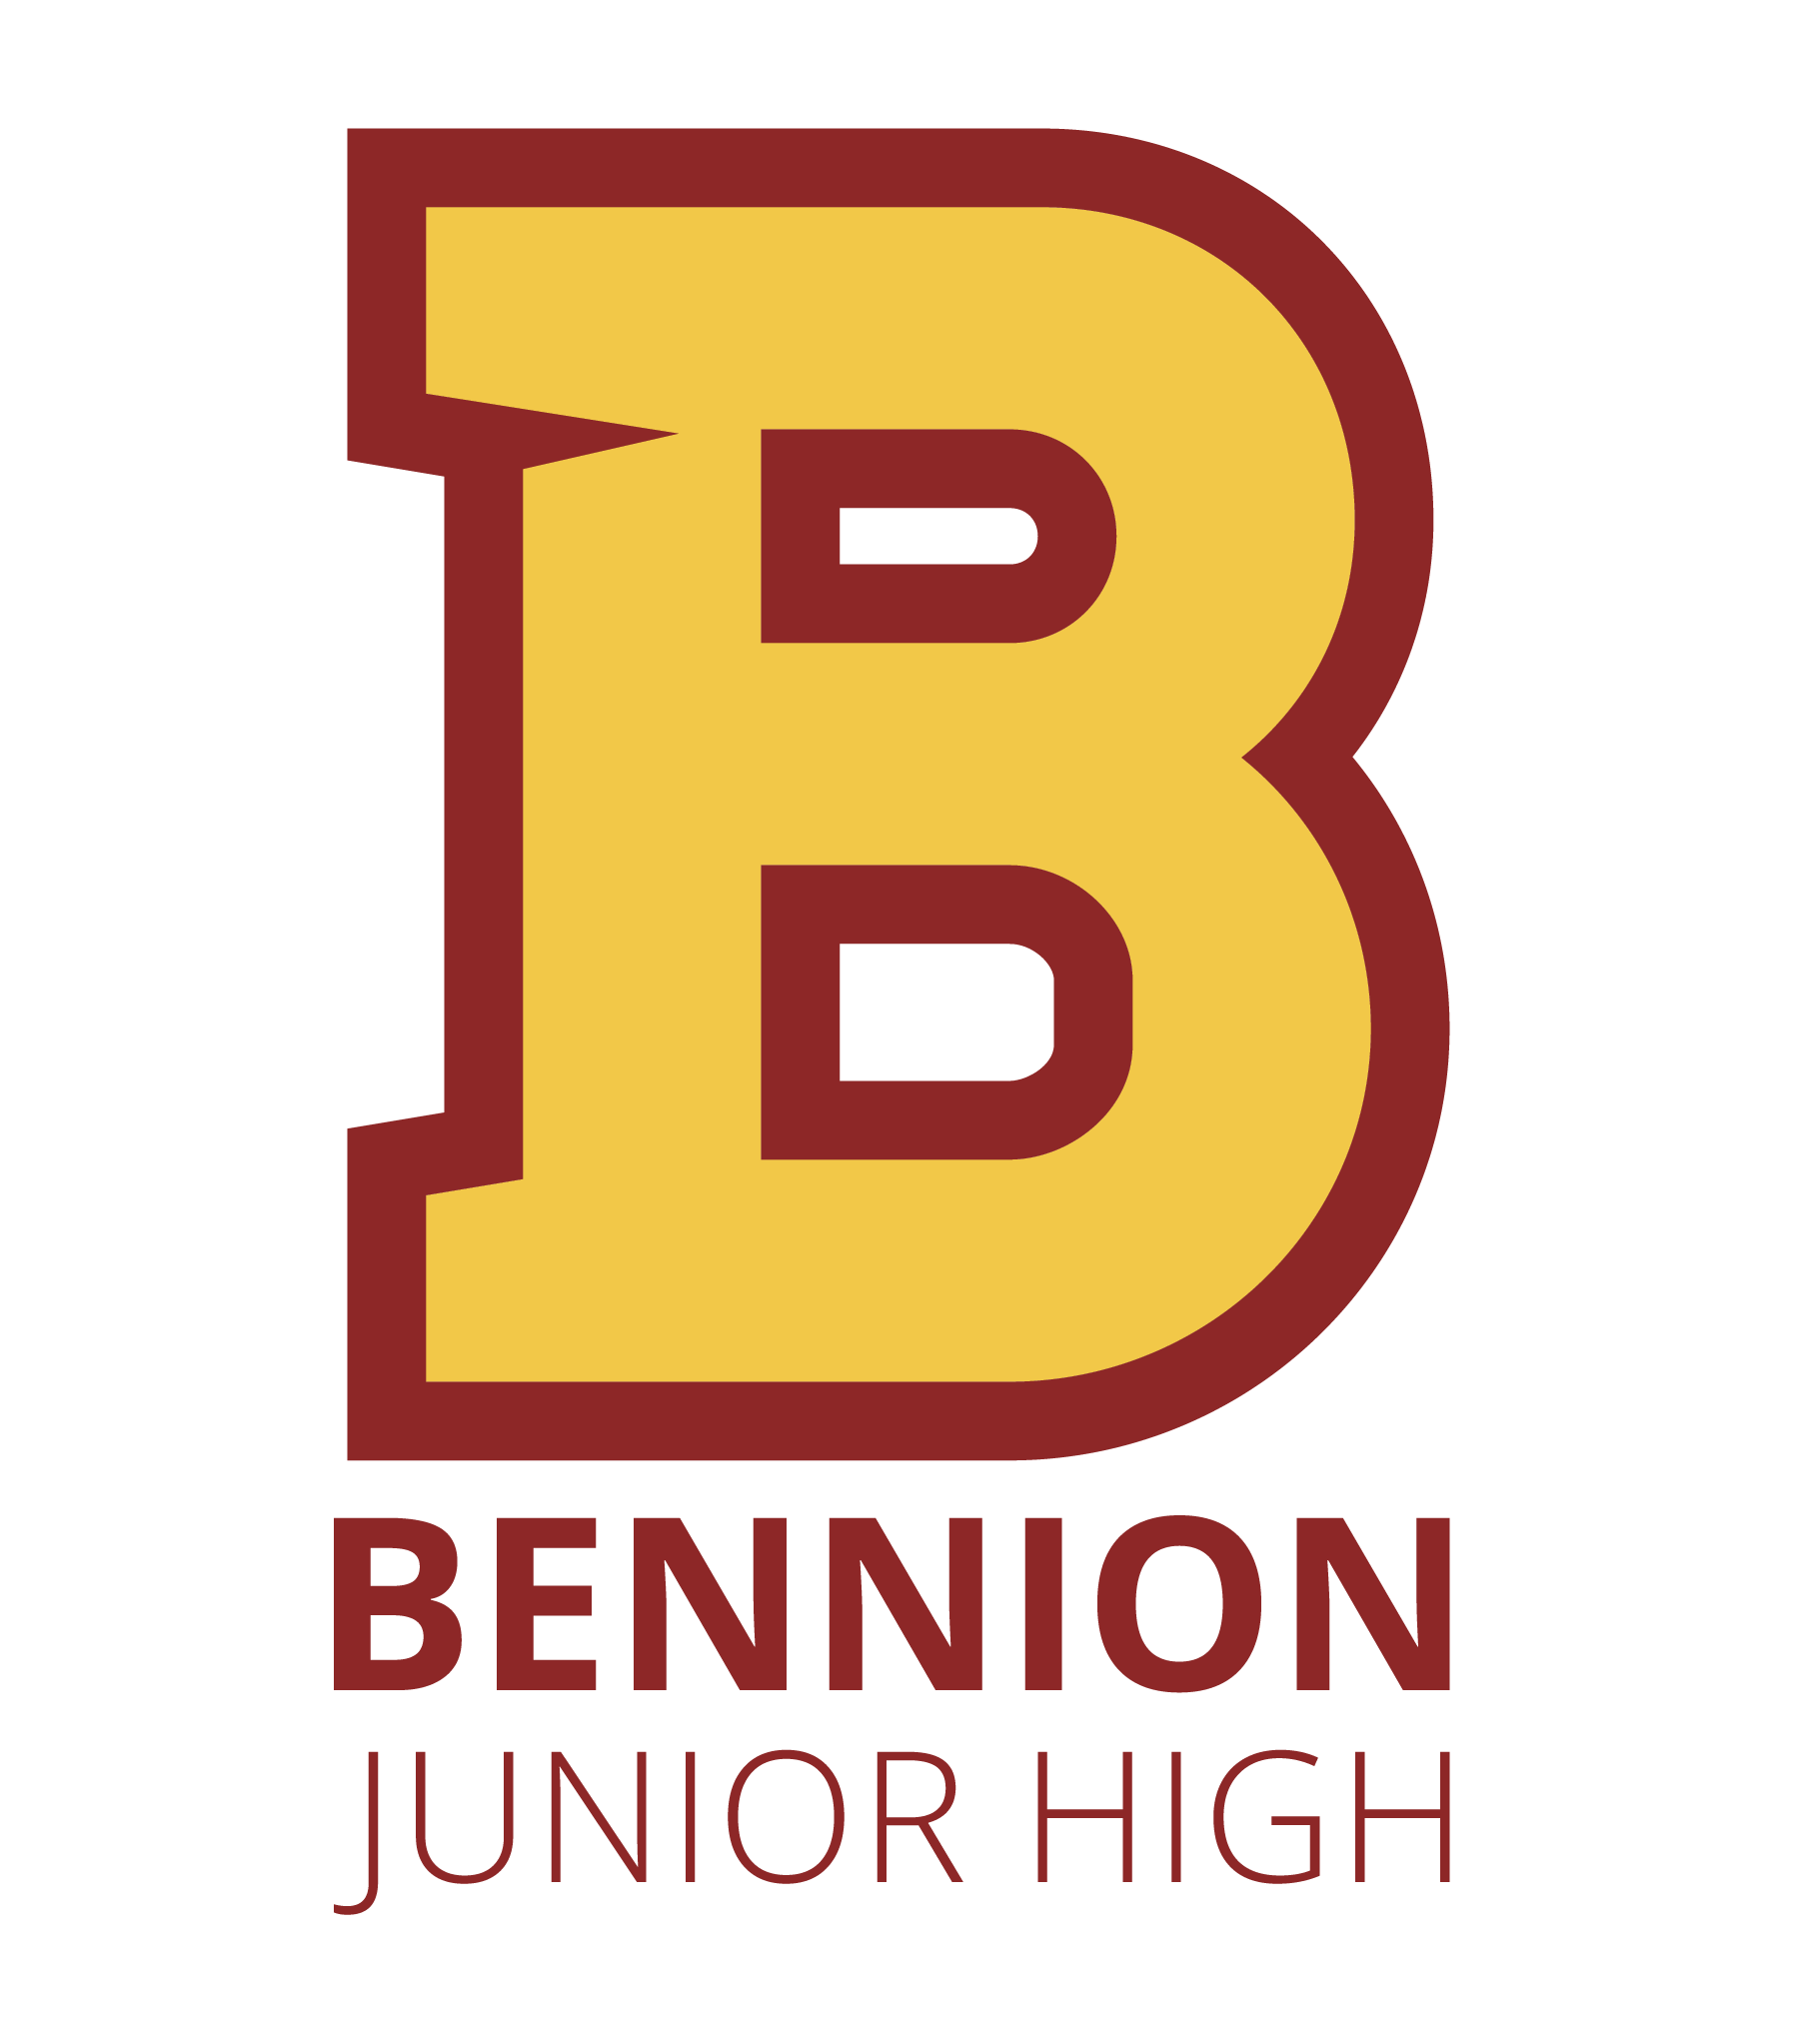 Bennion Junior High